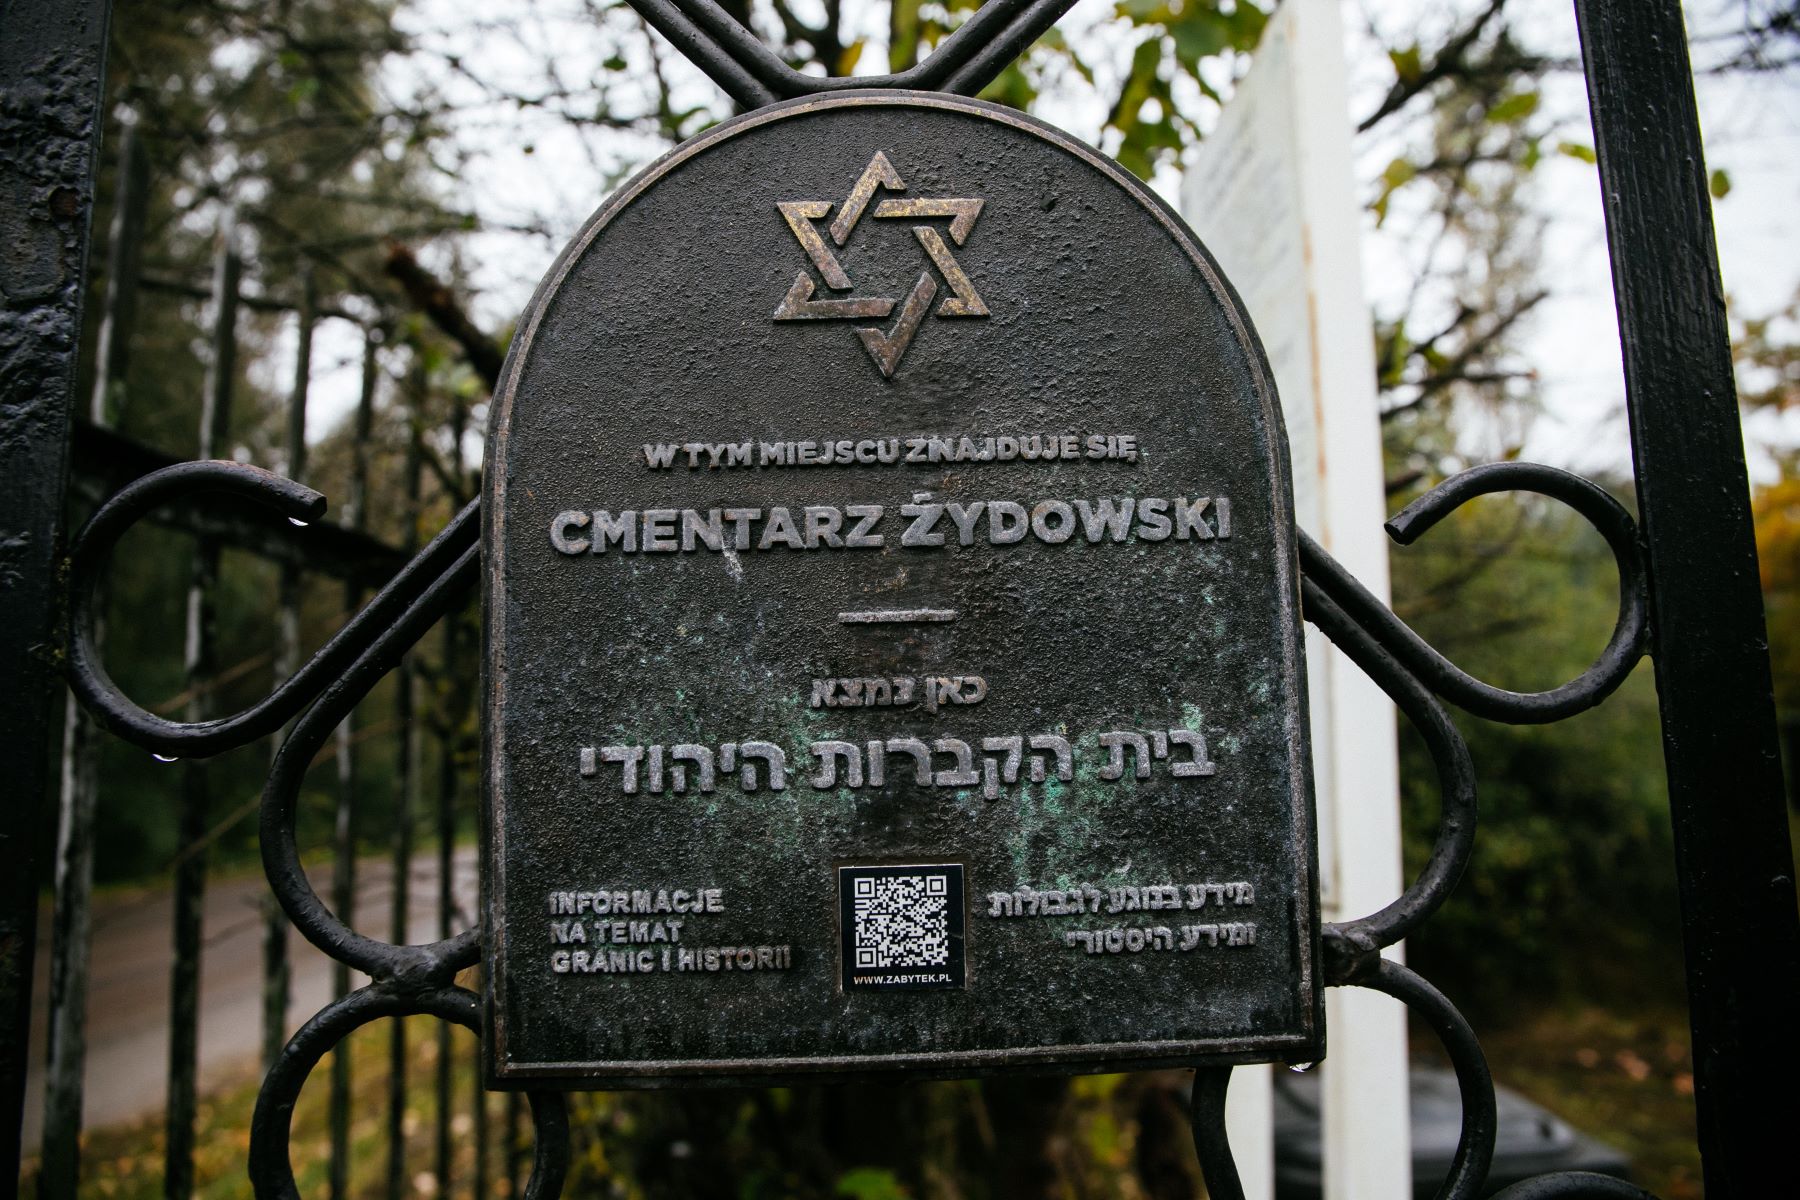 Tablica upamiętniająca cmentarz żydowski umieszczona na bramie w Górze Kalwarii.